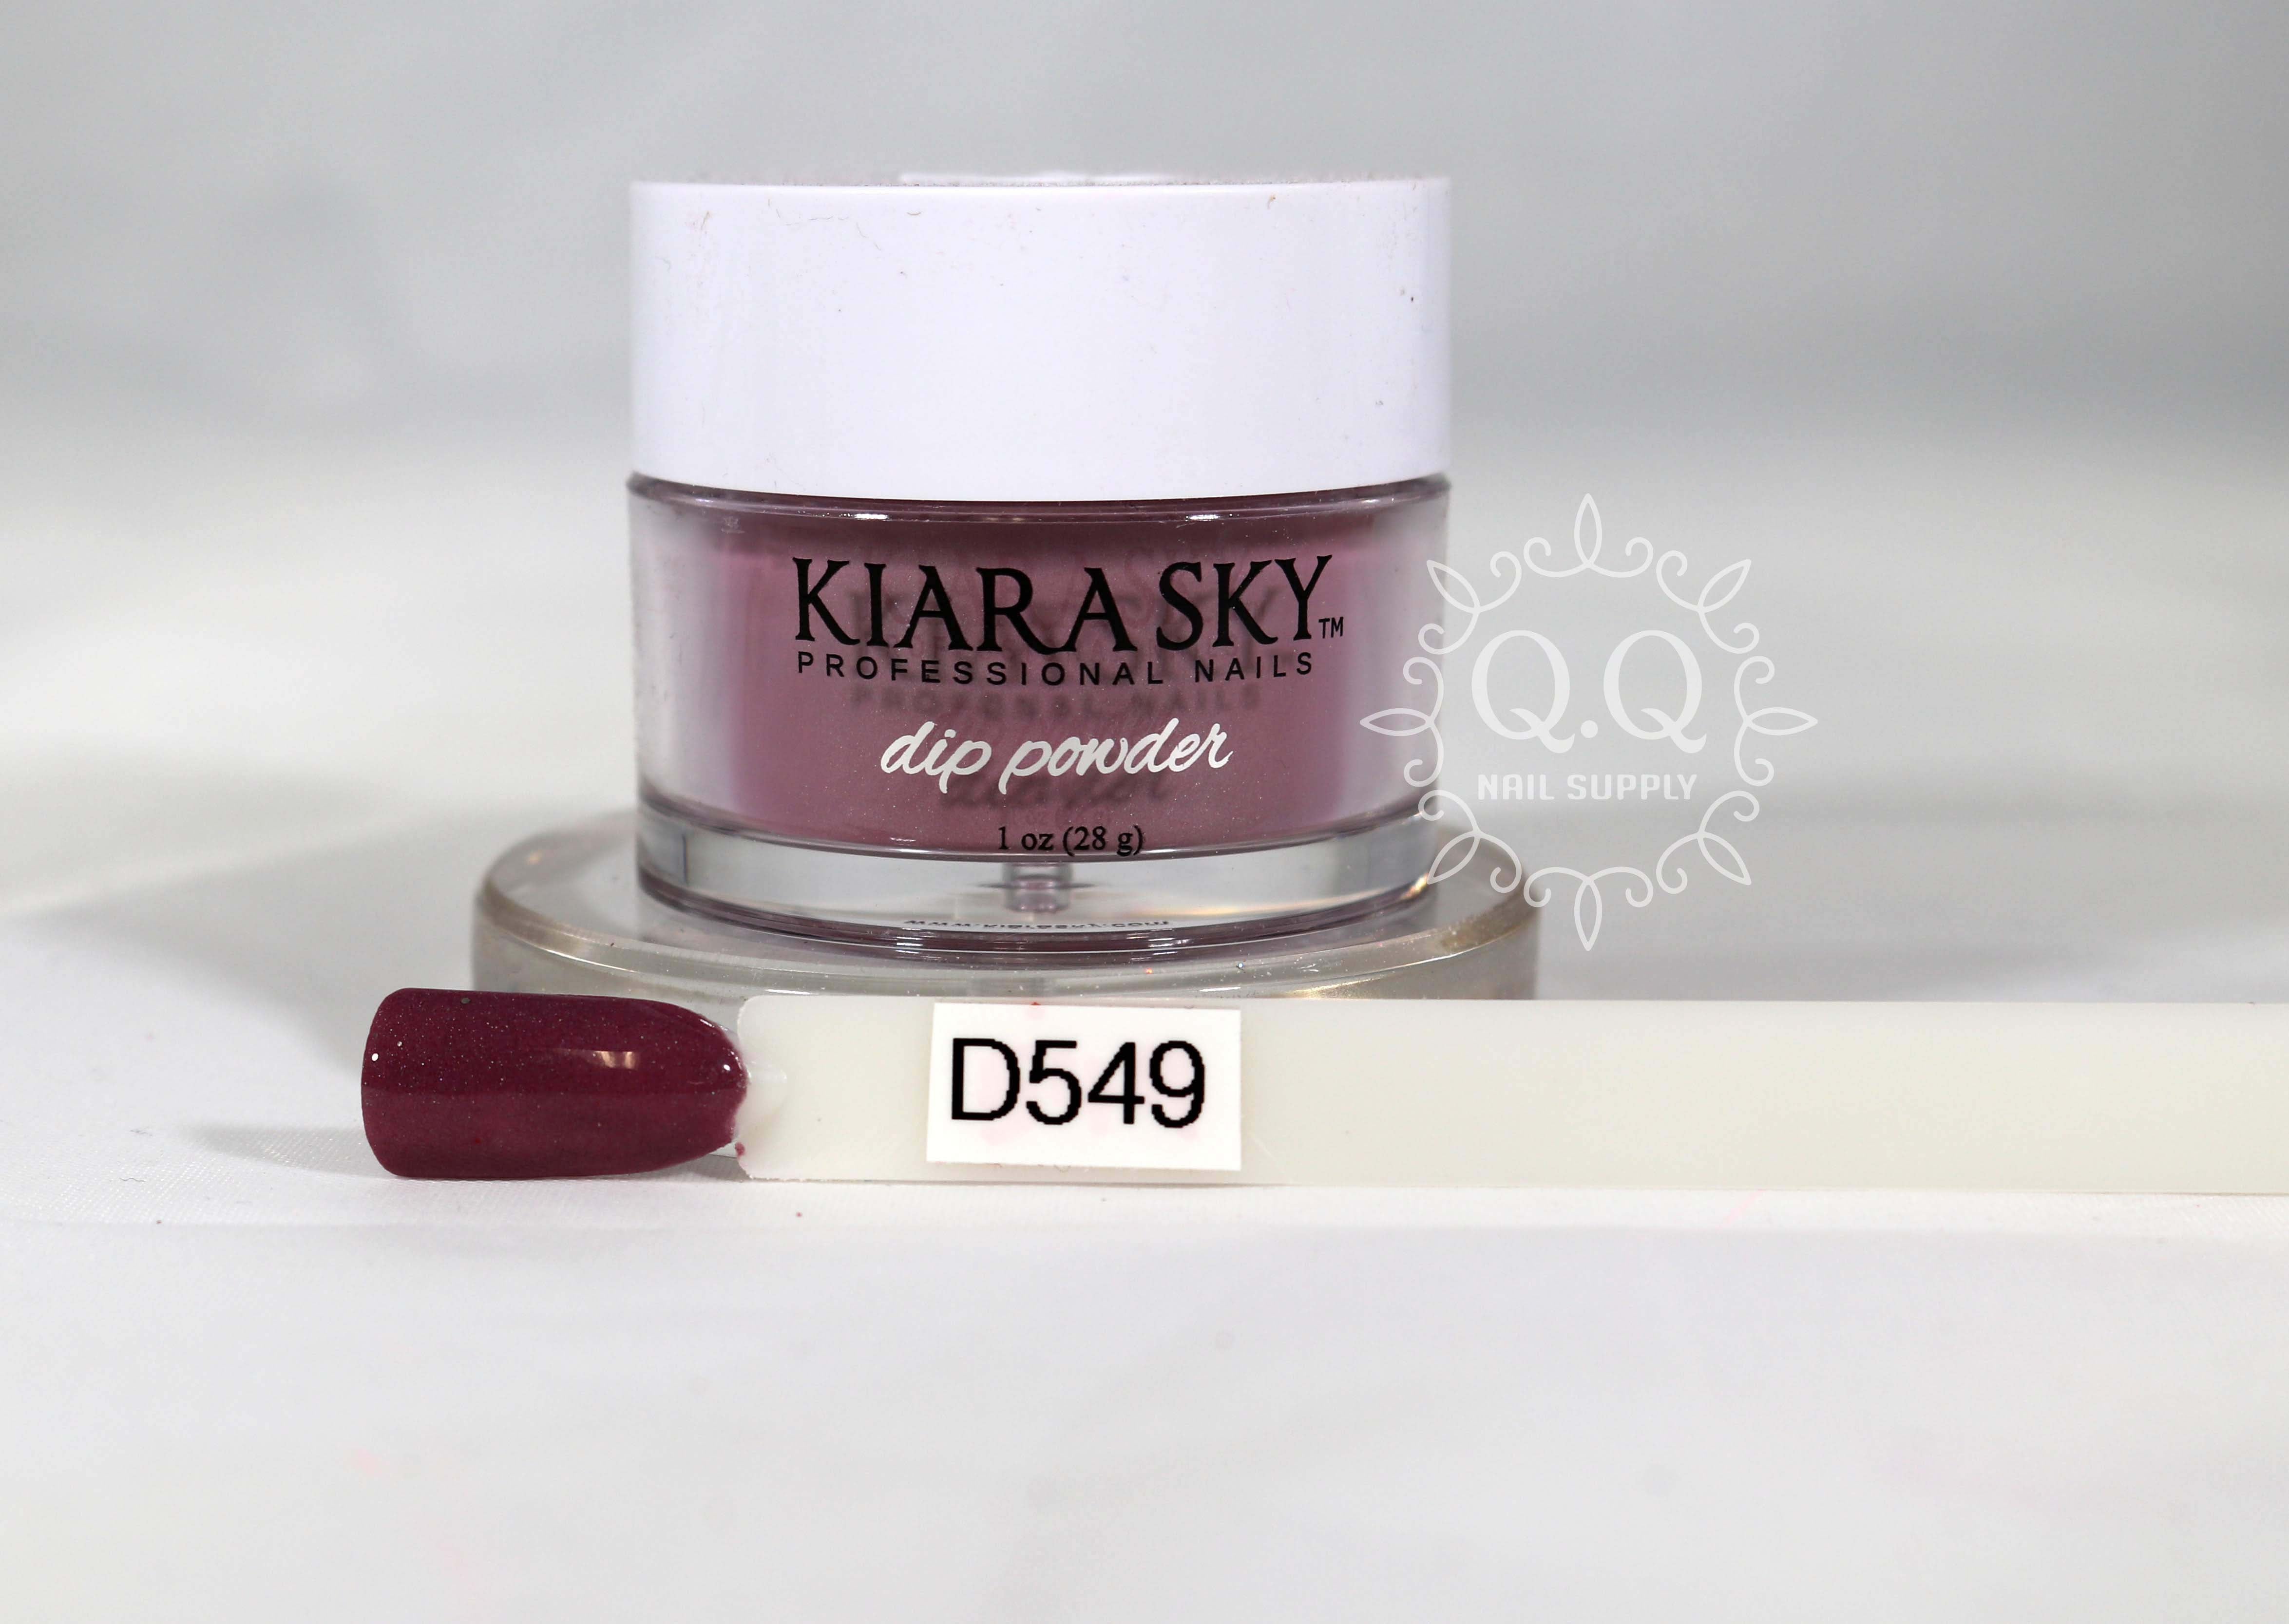 Kiara Sky Dip Dipping Powder D459 Polka Dots 1 oz